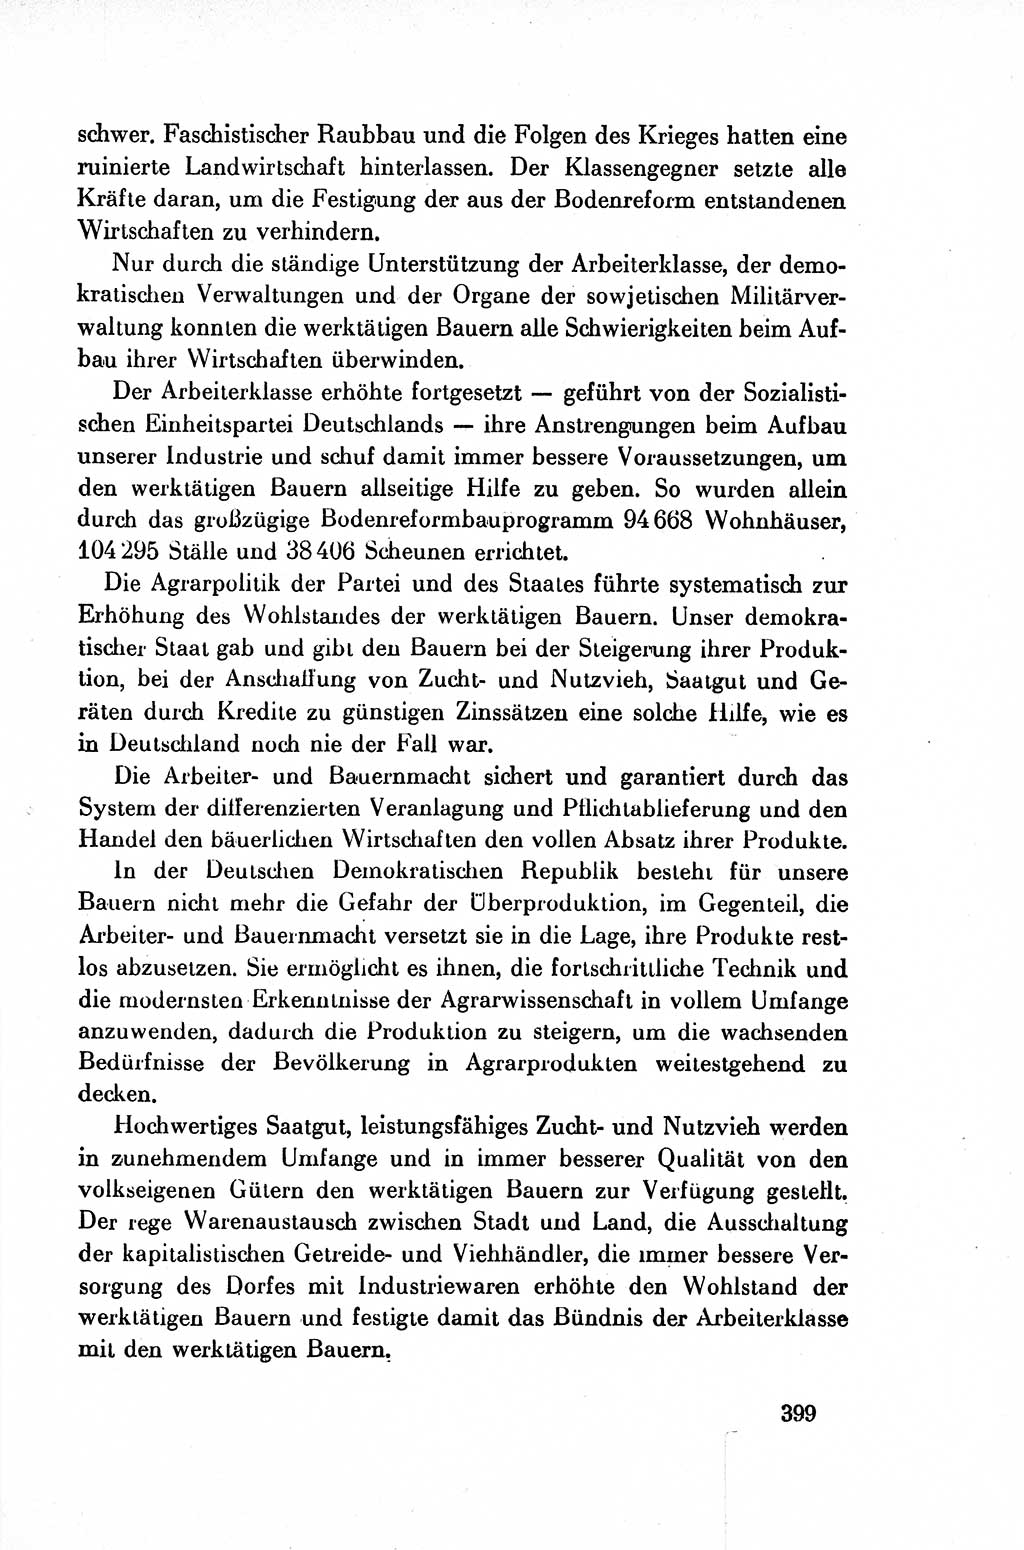 Dokumente der Sozialistischen Einheitspartei Deutschlands (SED) [Deutsche Demokratische Republik (DDR)] 1954-1955, Seite 399 (Dok. SED DDR 1954-1955, S. 399)